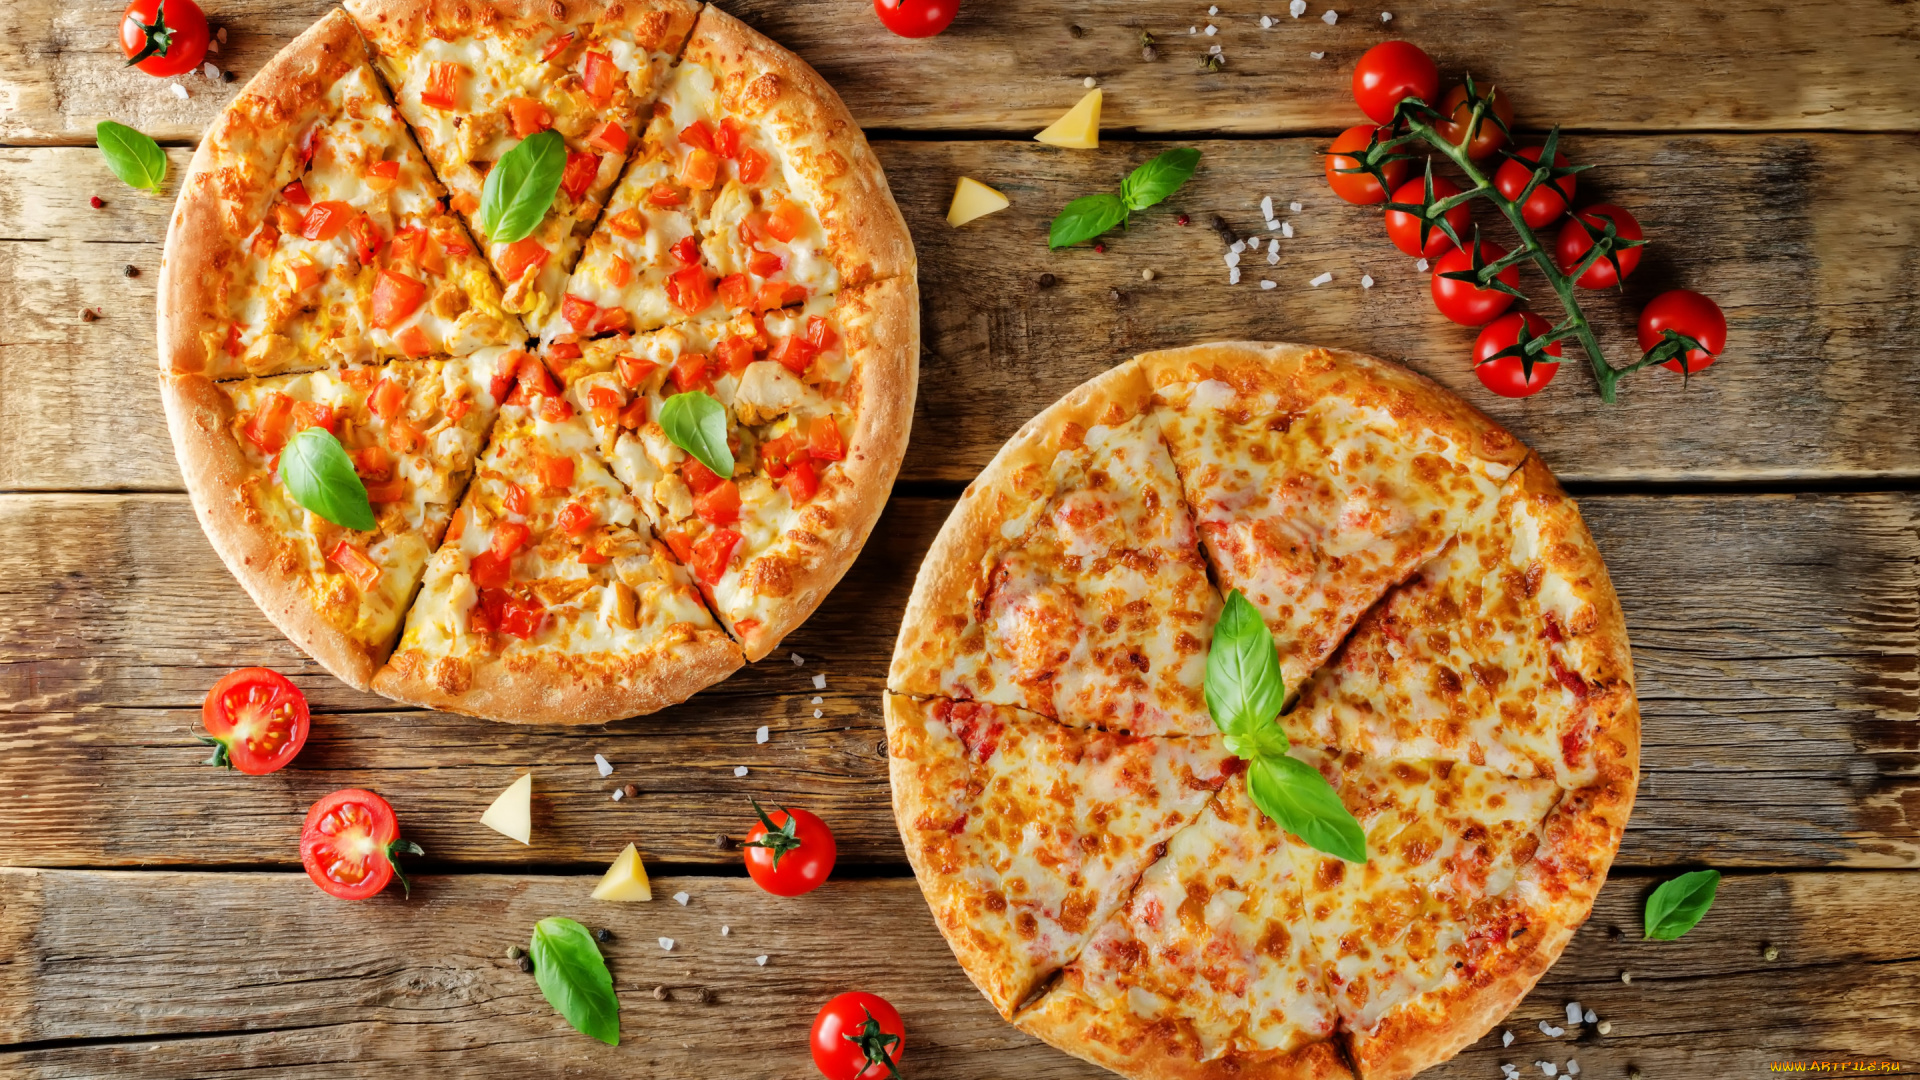 еда, пицца, пиццы, базилик, пармезан, wood, помидоры, сыр, томаты